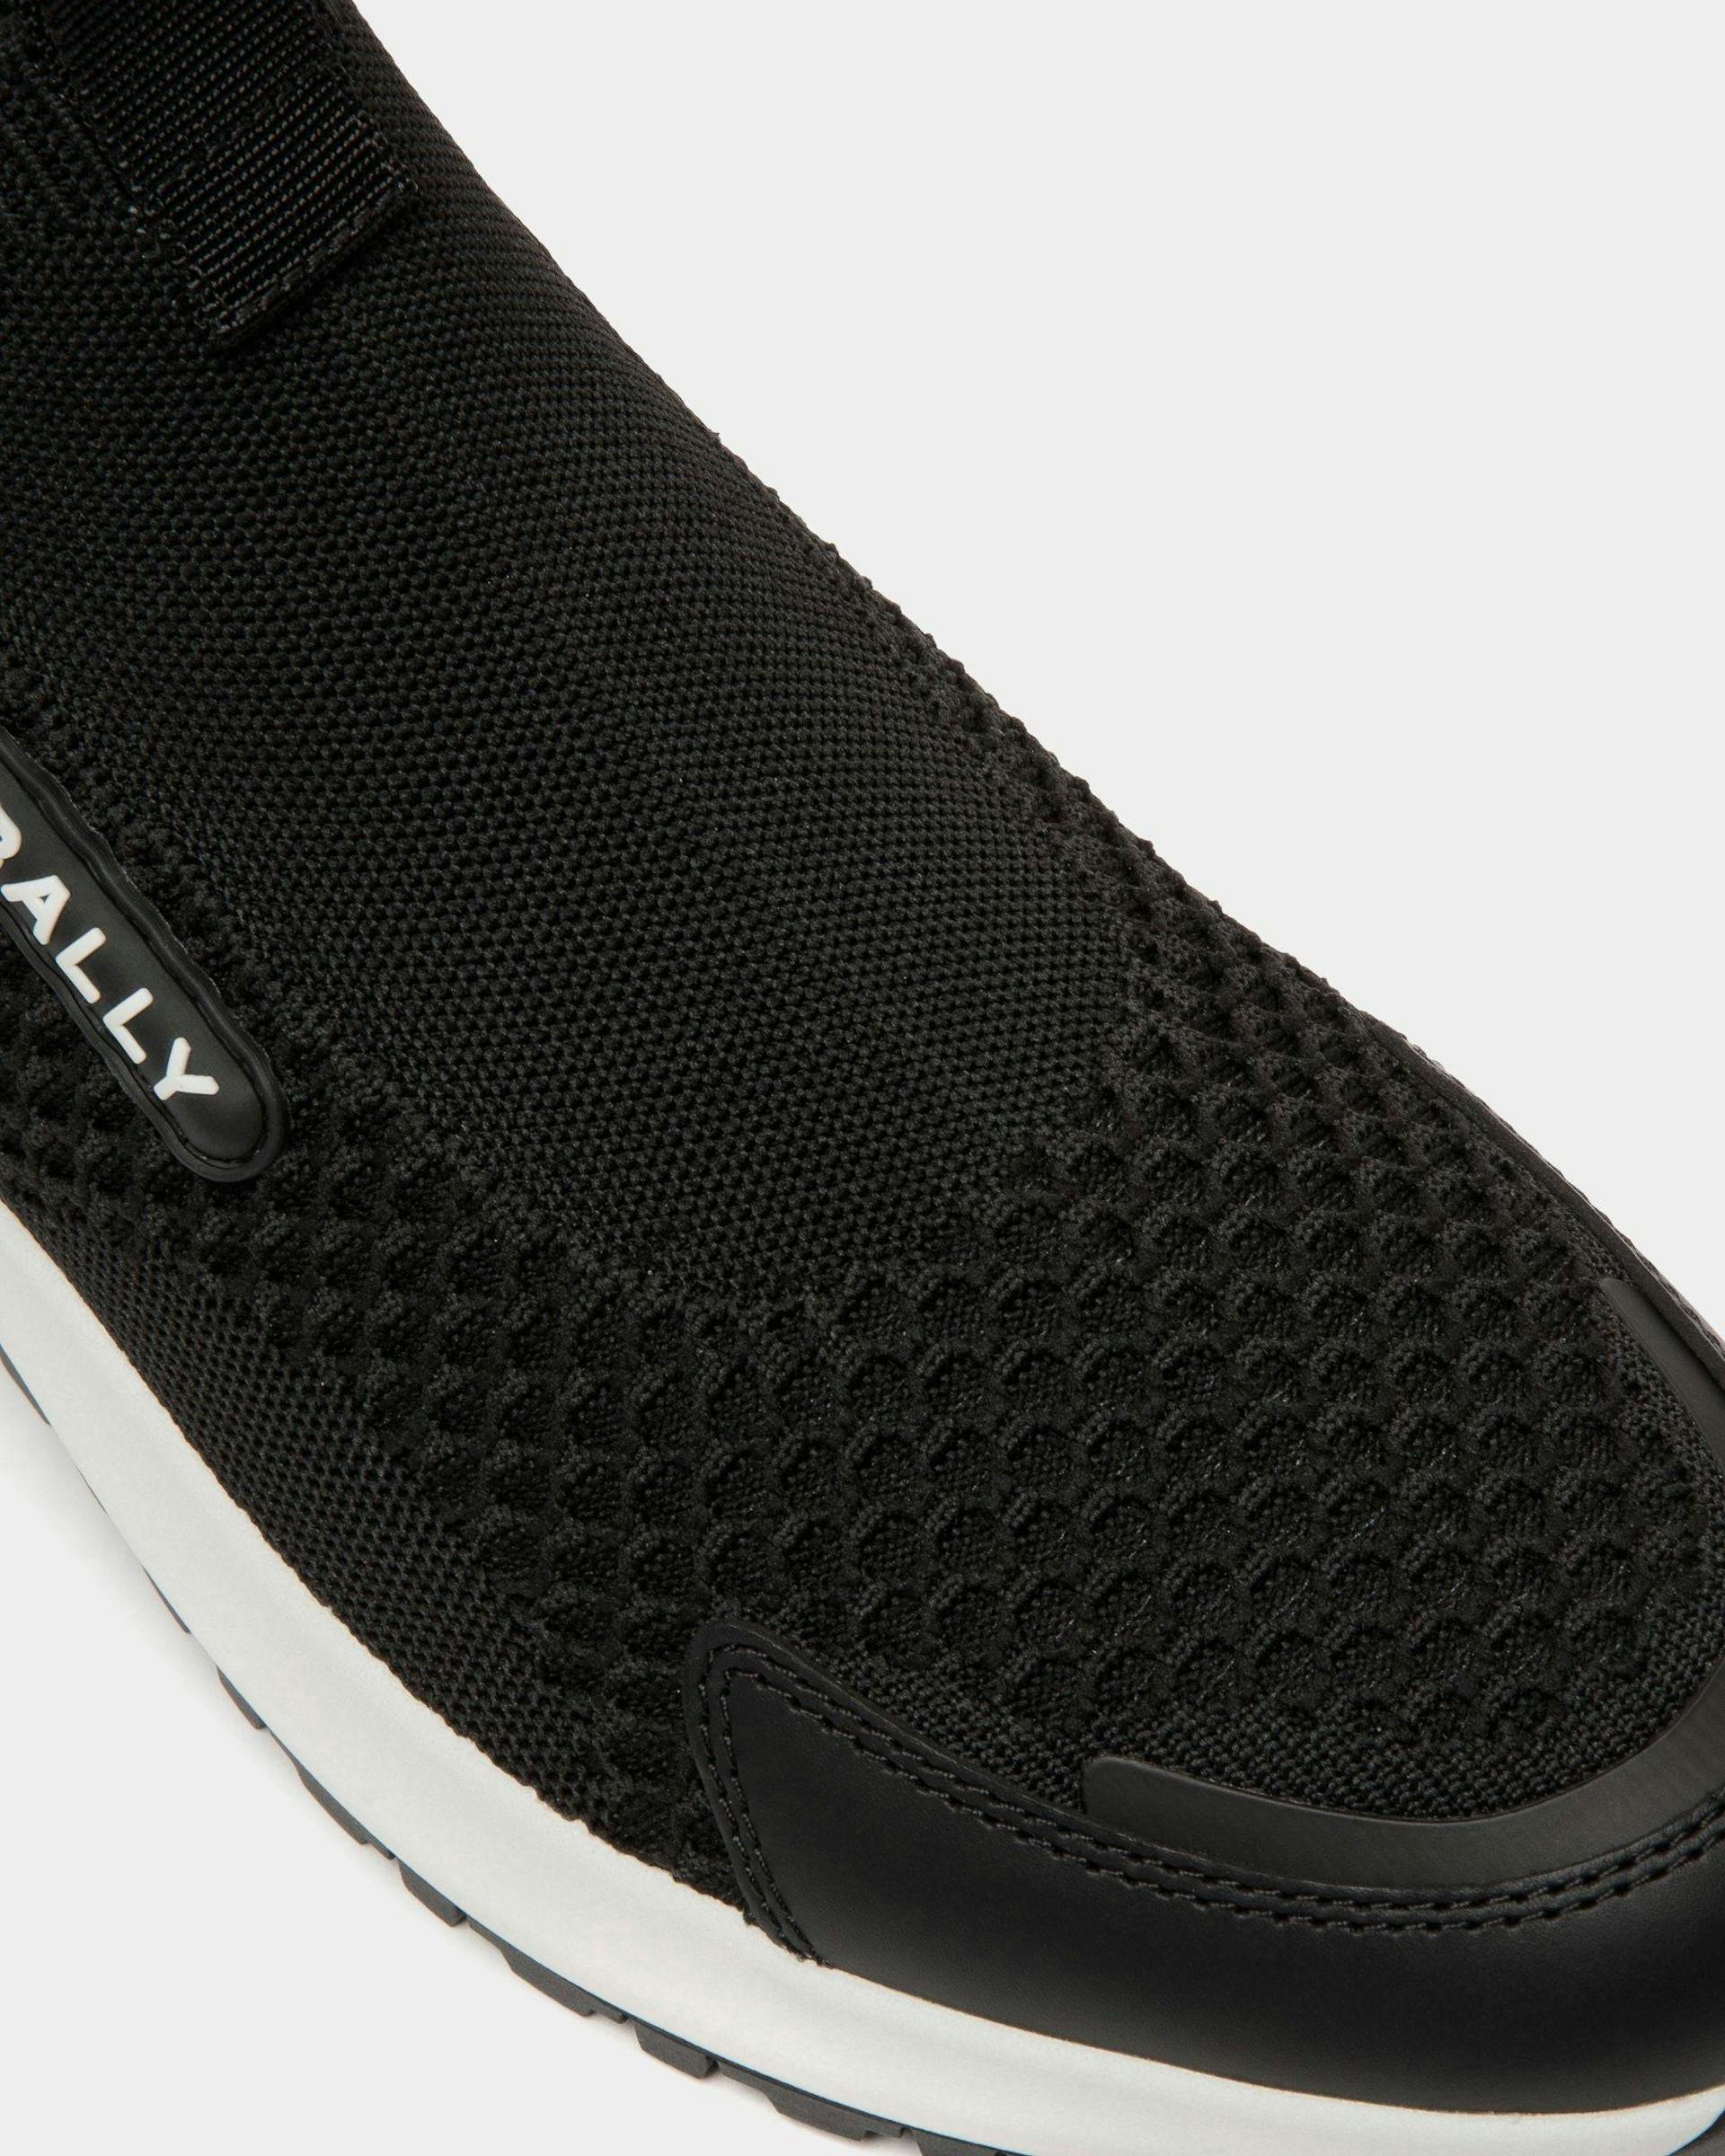 Men's Outline Sneaker in Black Nylon | Bally | Still Life Detail